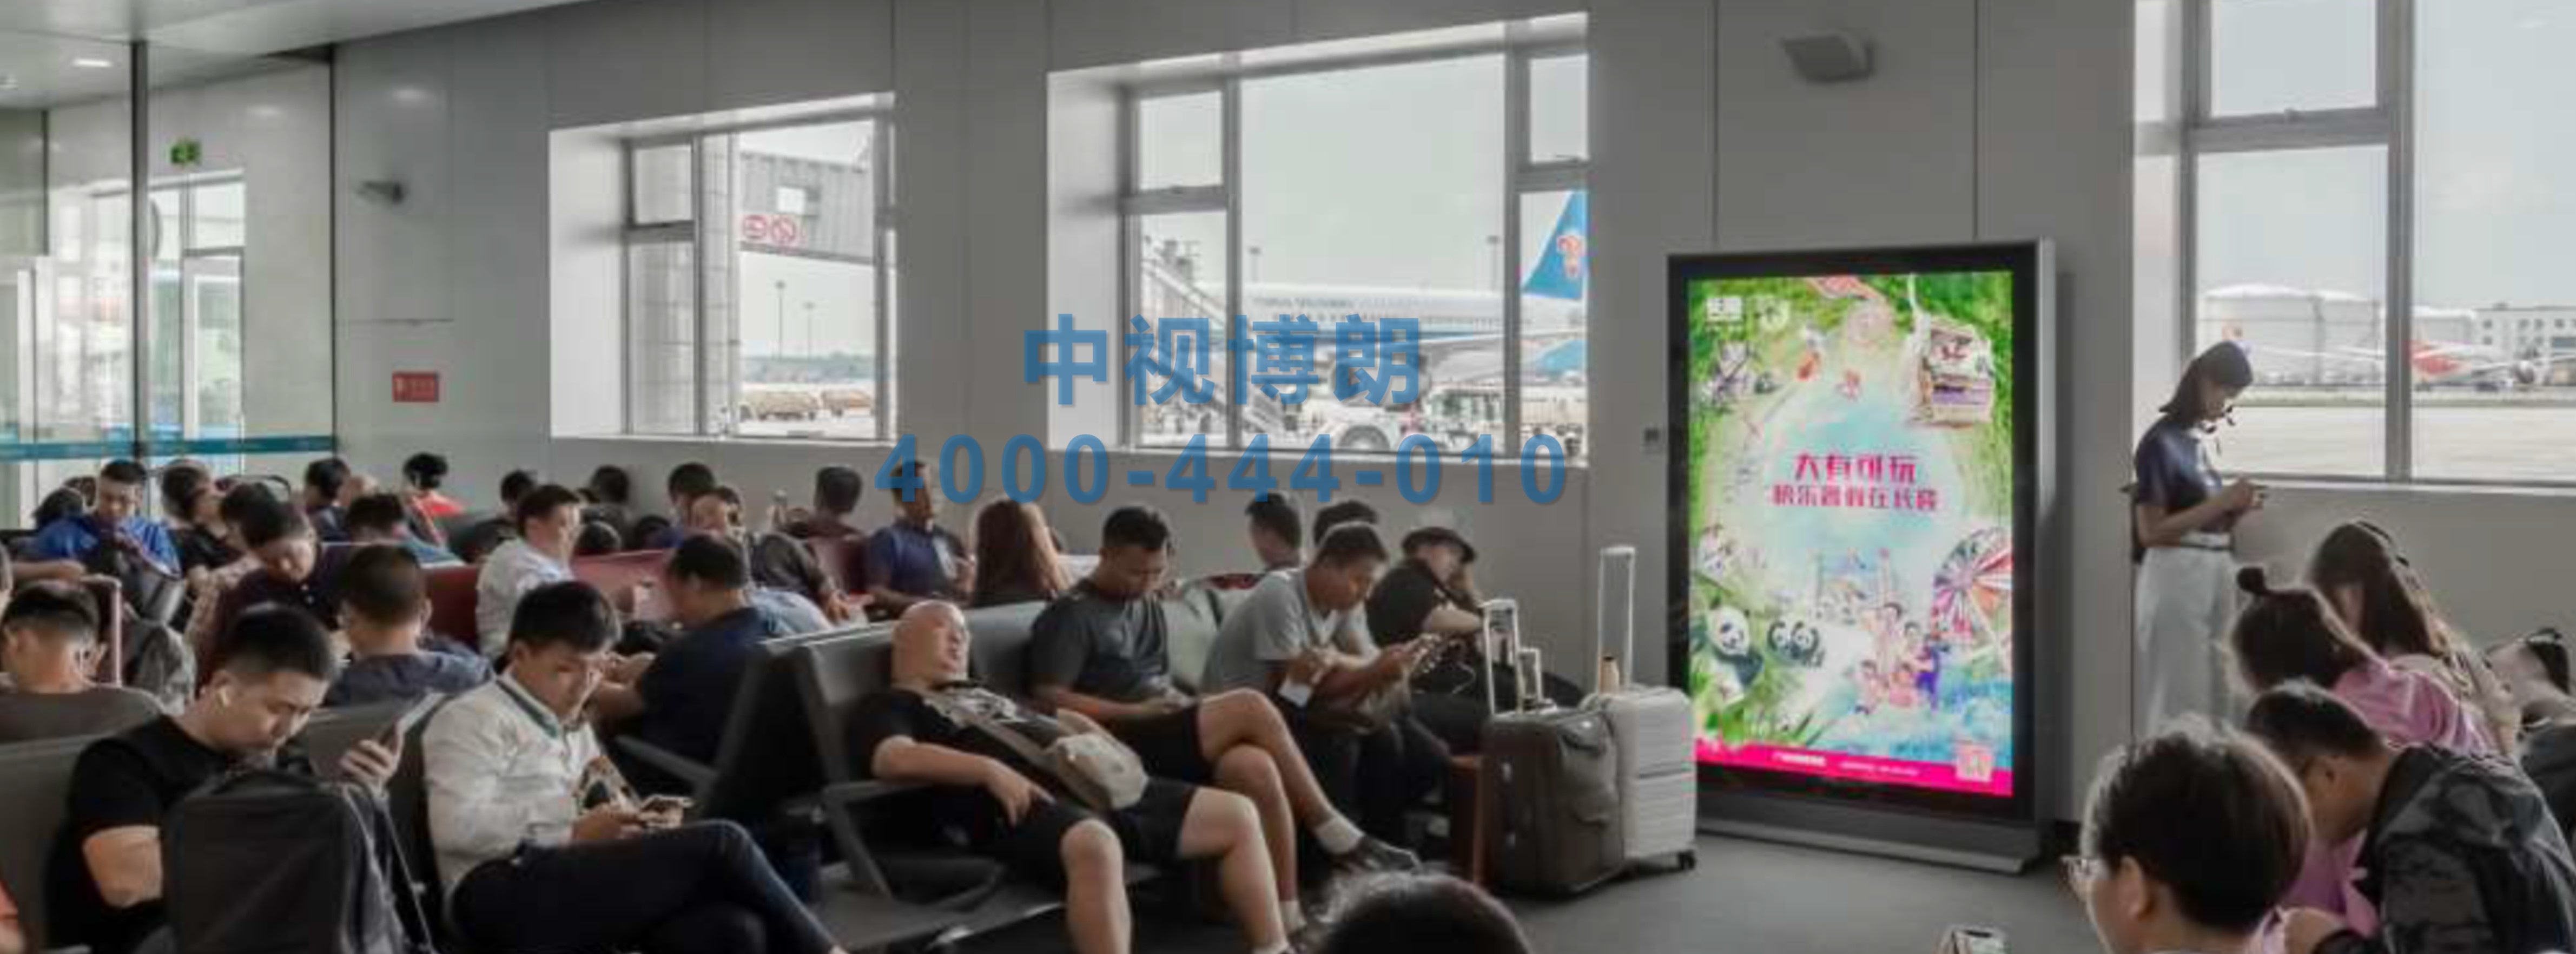 北京首都机场广告-T2国内出发候机区滚动灯箱01